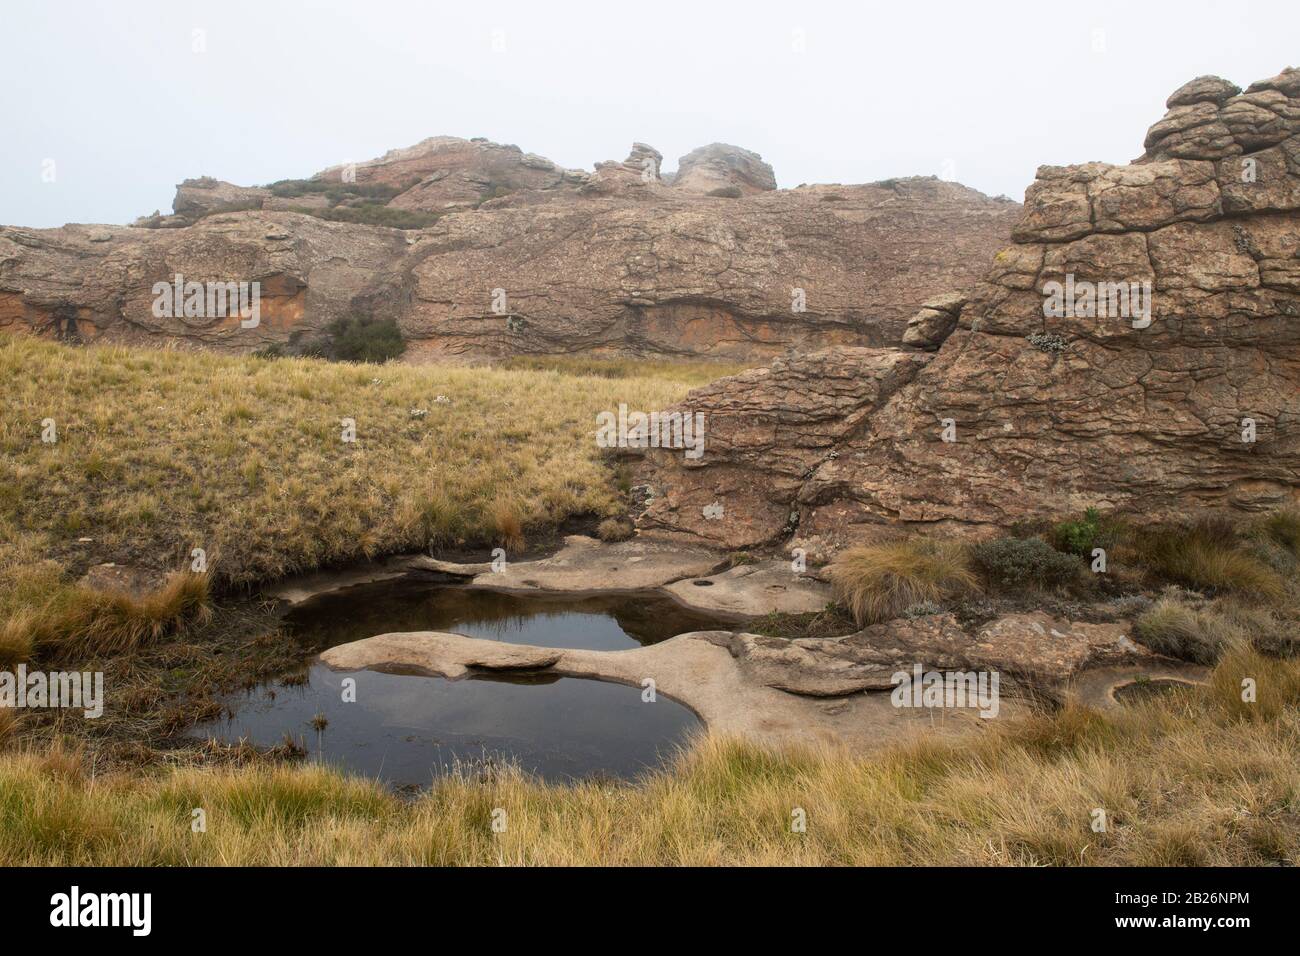 Rockpool, Sehlabathebe National Park, Lesotho Stockfoto